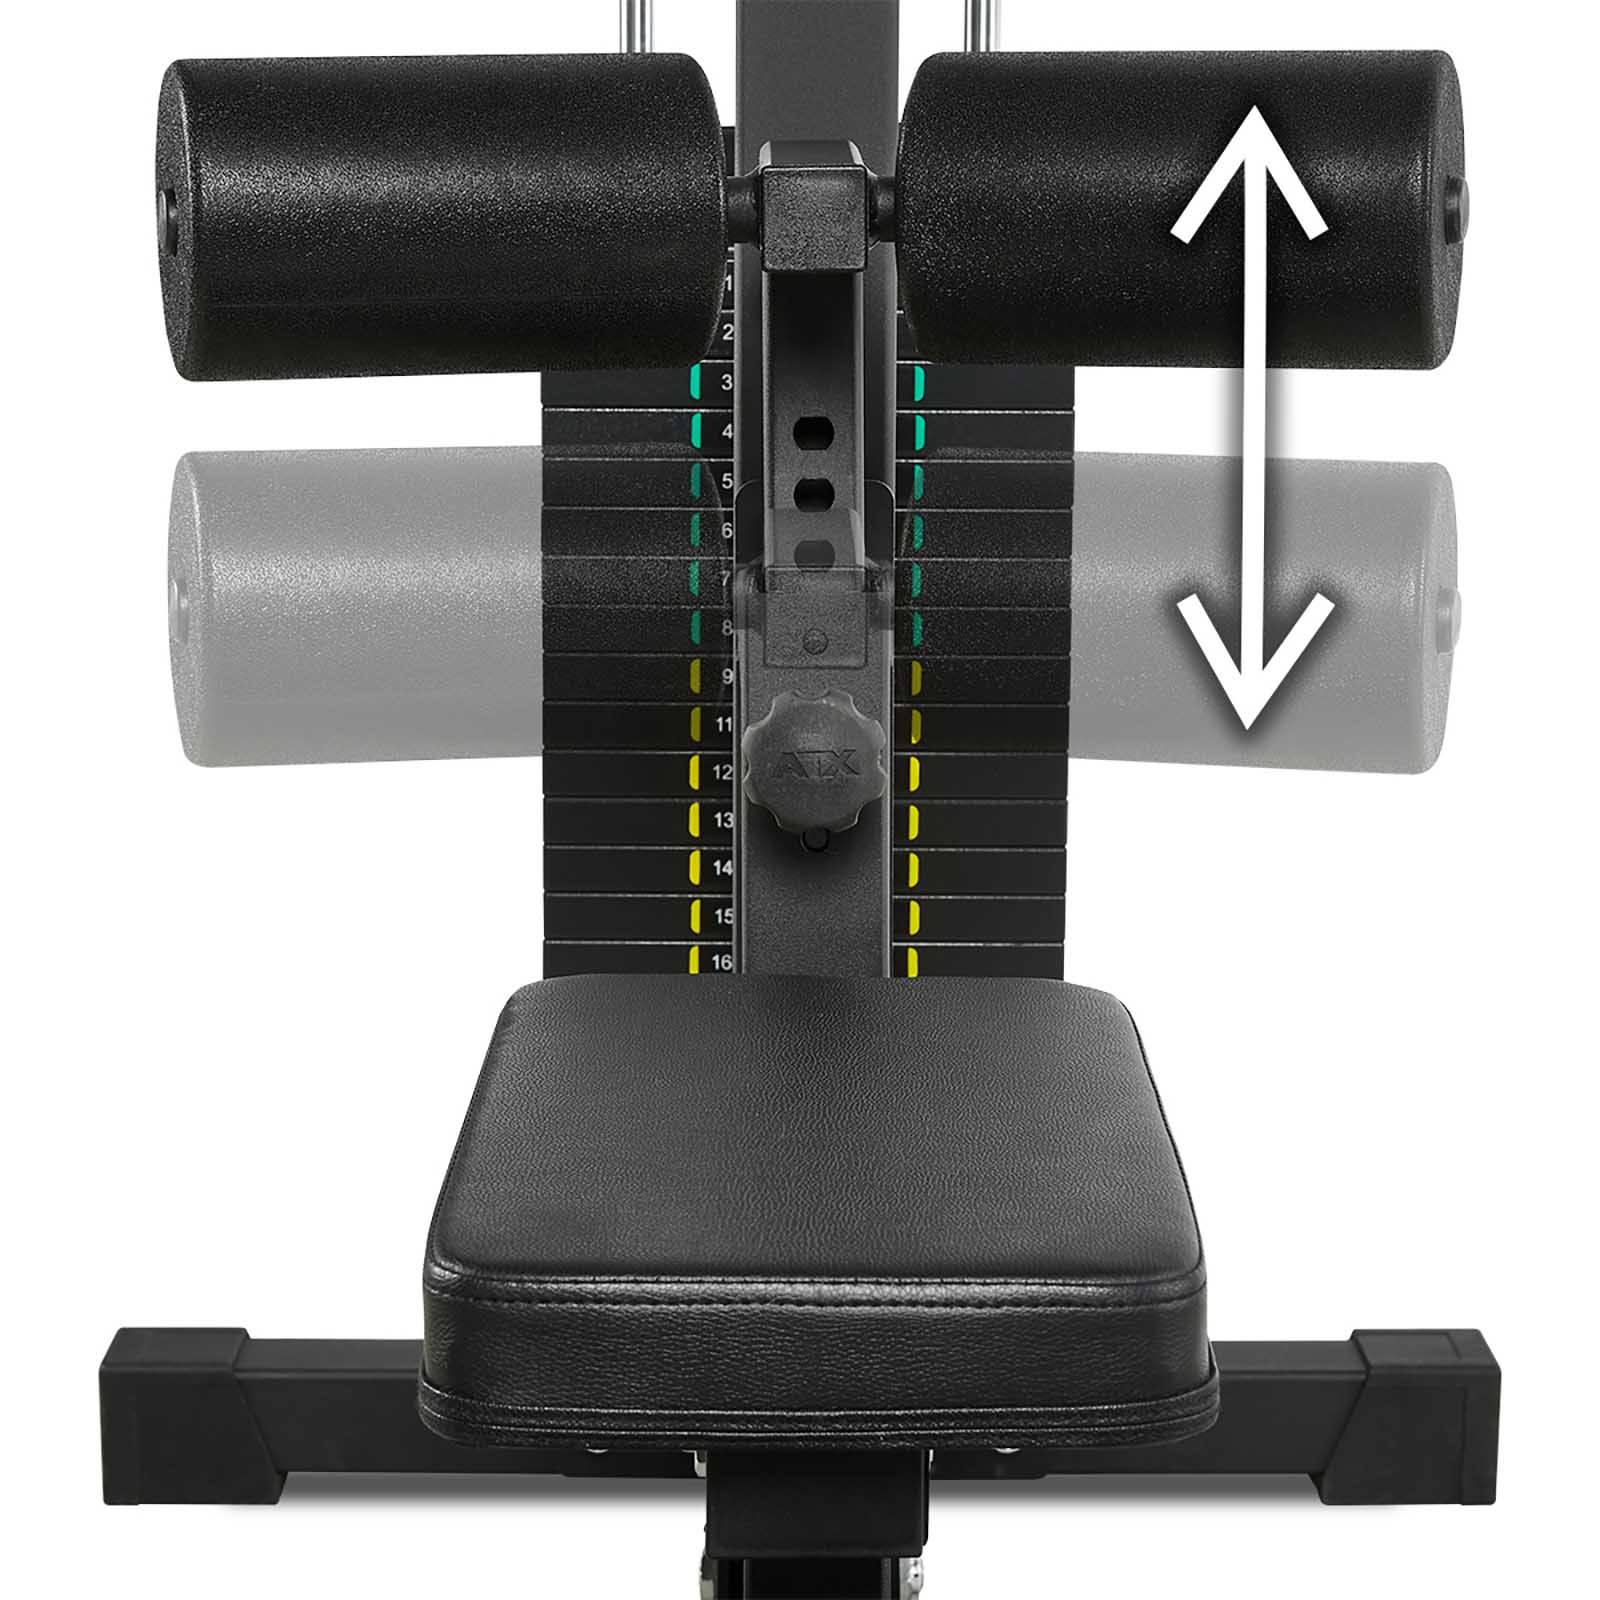 Adjustable knee support pad